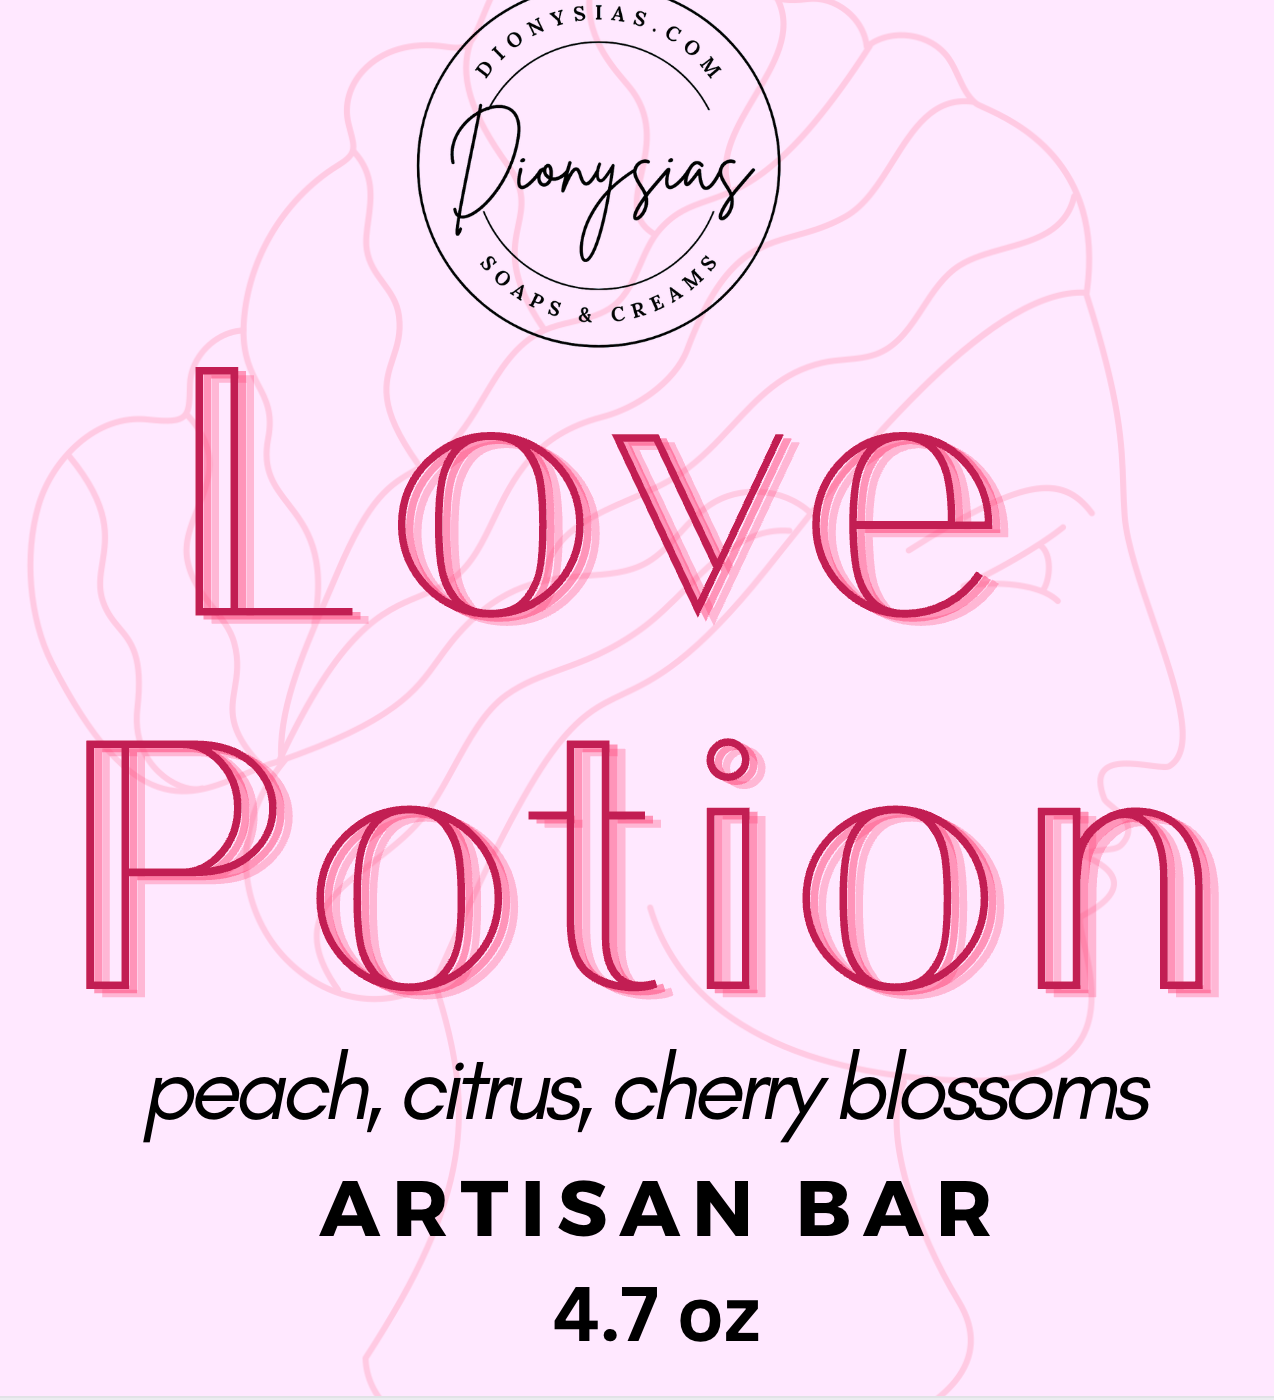 Love Potion (artisan bar)